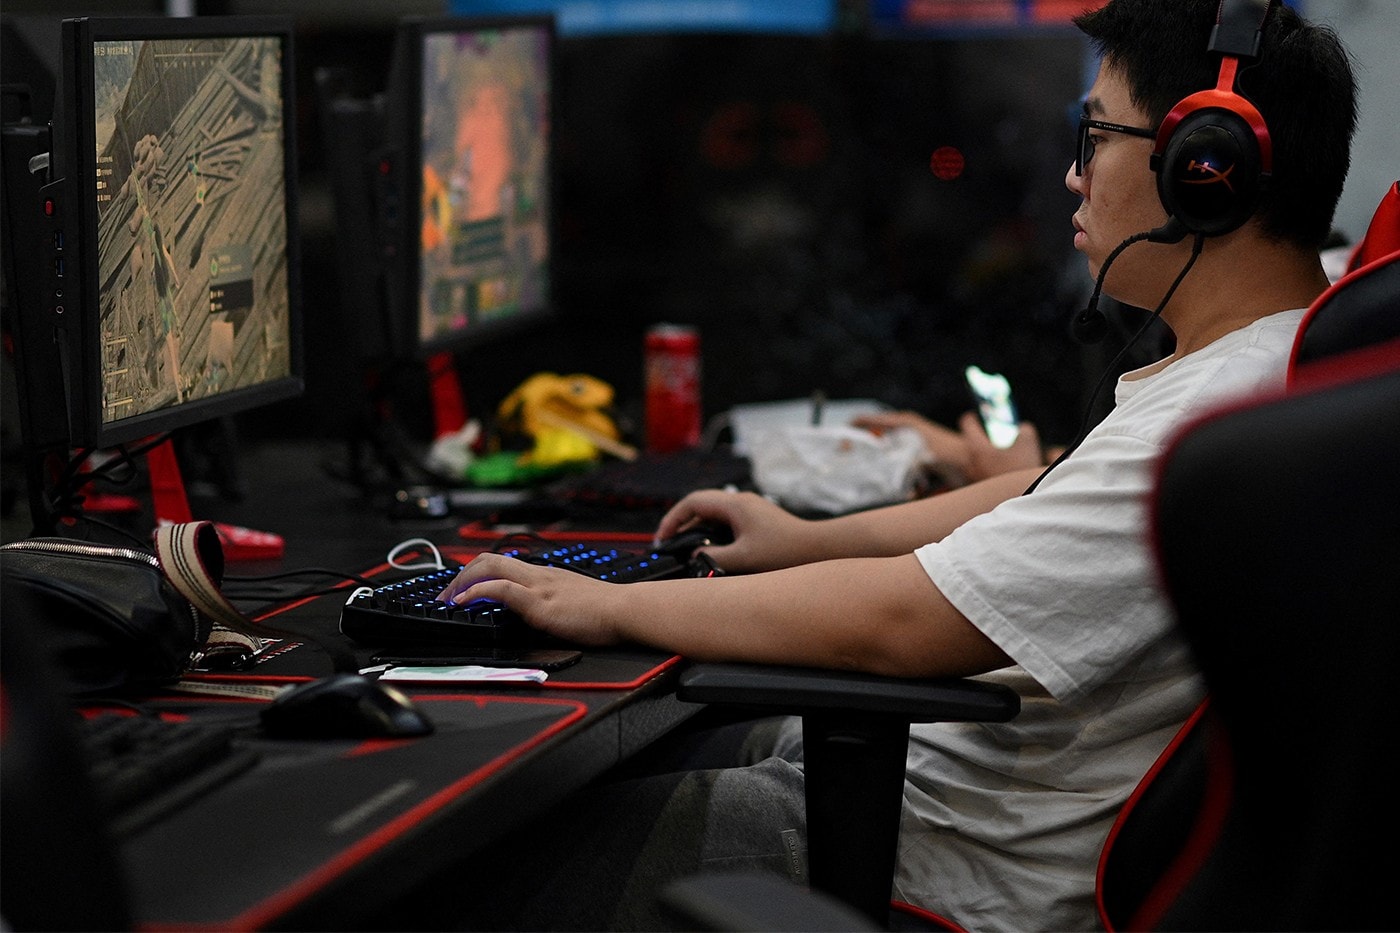 中國頒佈最新法令限制未成年人一週僅能遊玩 3 小時的網路遊戲